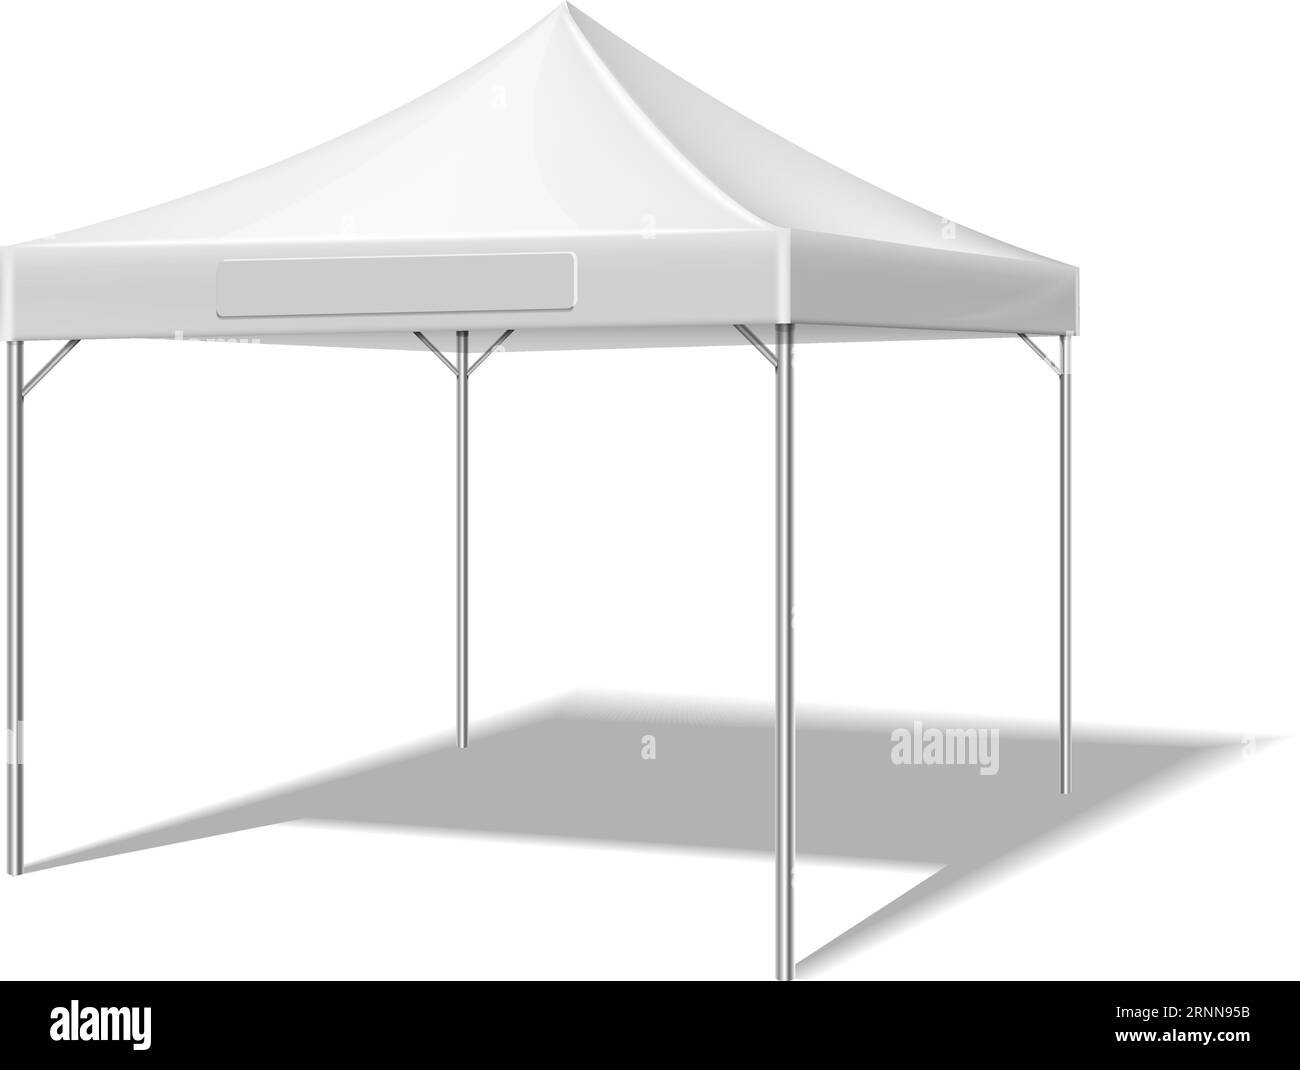 Weißes Zeltmodell. Realistischer Sonnenschirm für Event-Werbung Stock Vektor